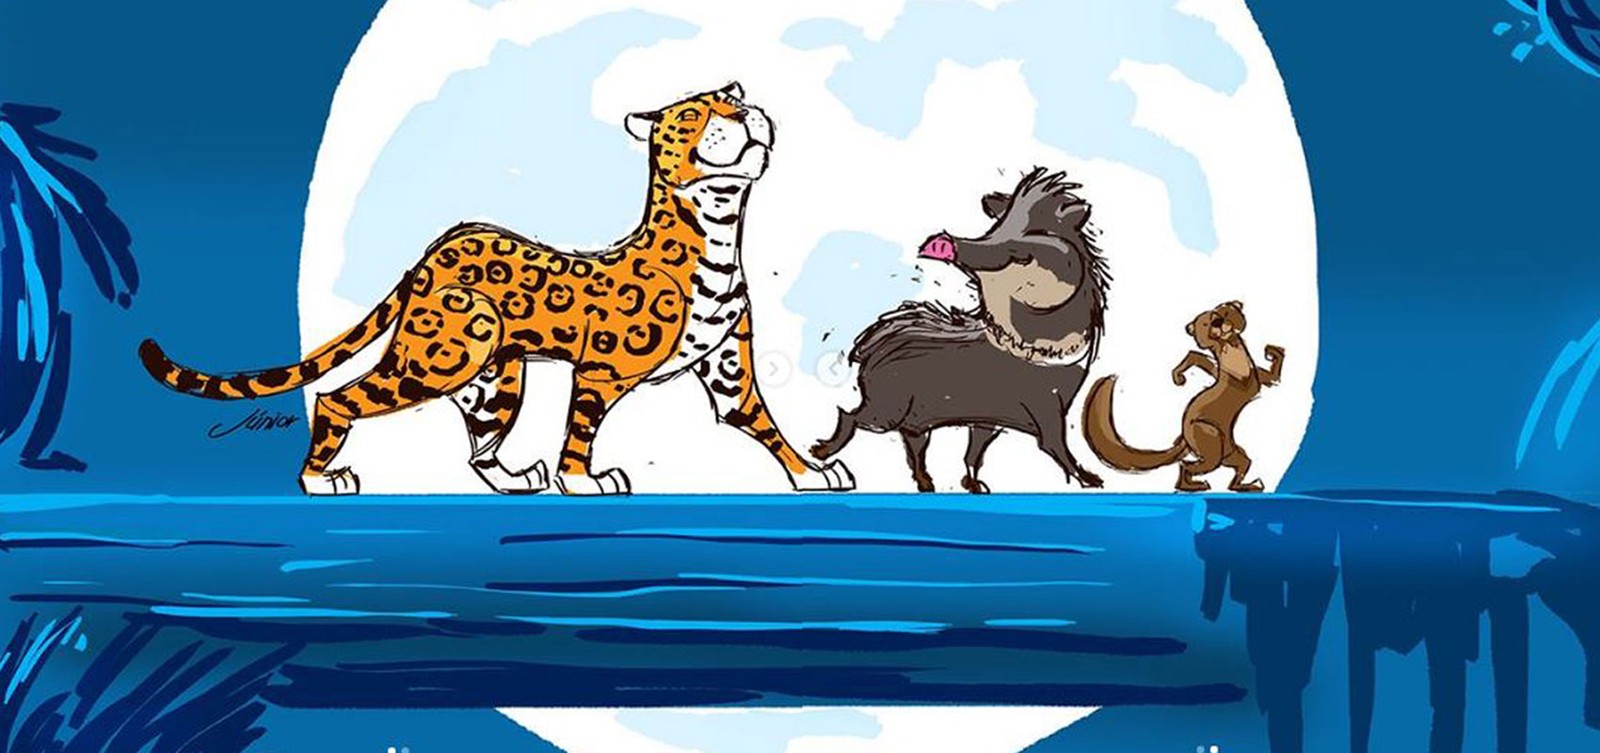 Ilustração do filme “O Rei Leão”- Mostra animais, O Hakuna Matata, Timão e Pumba dançando.